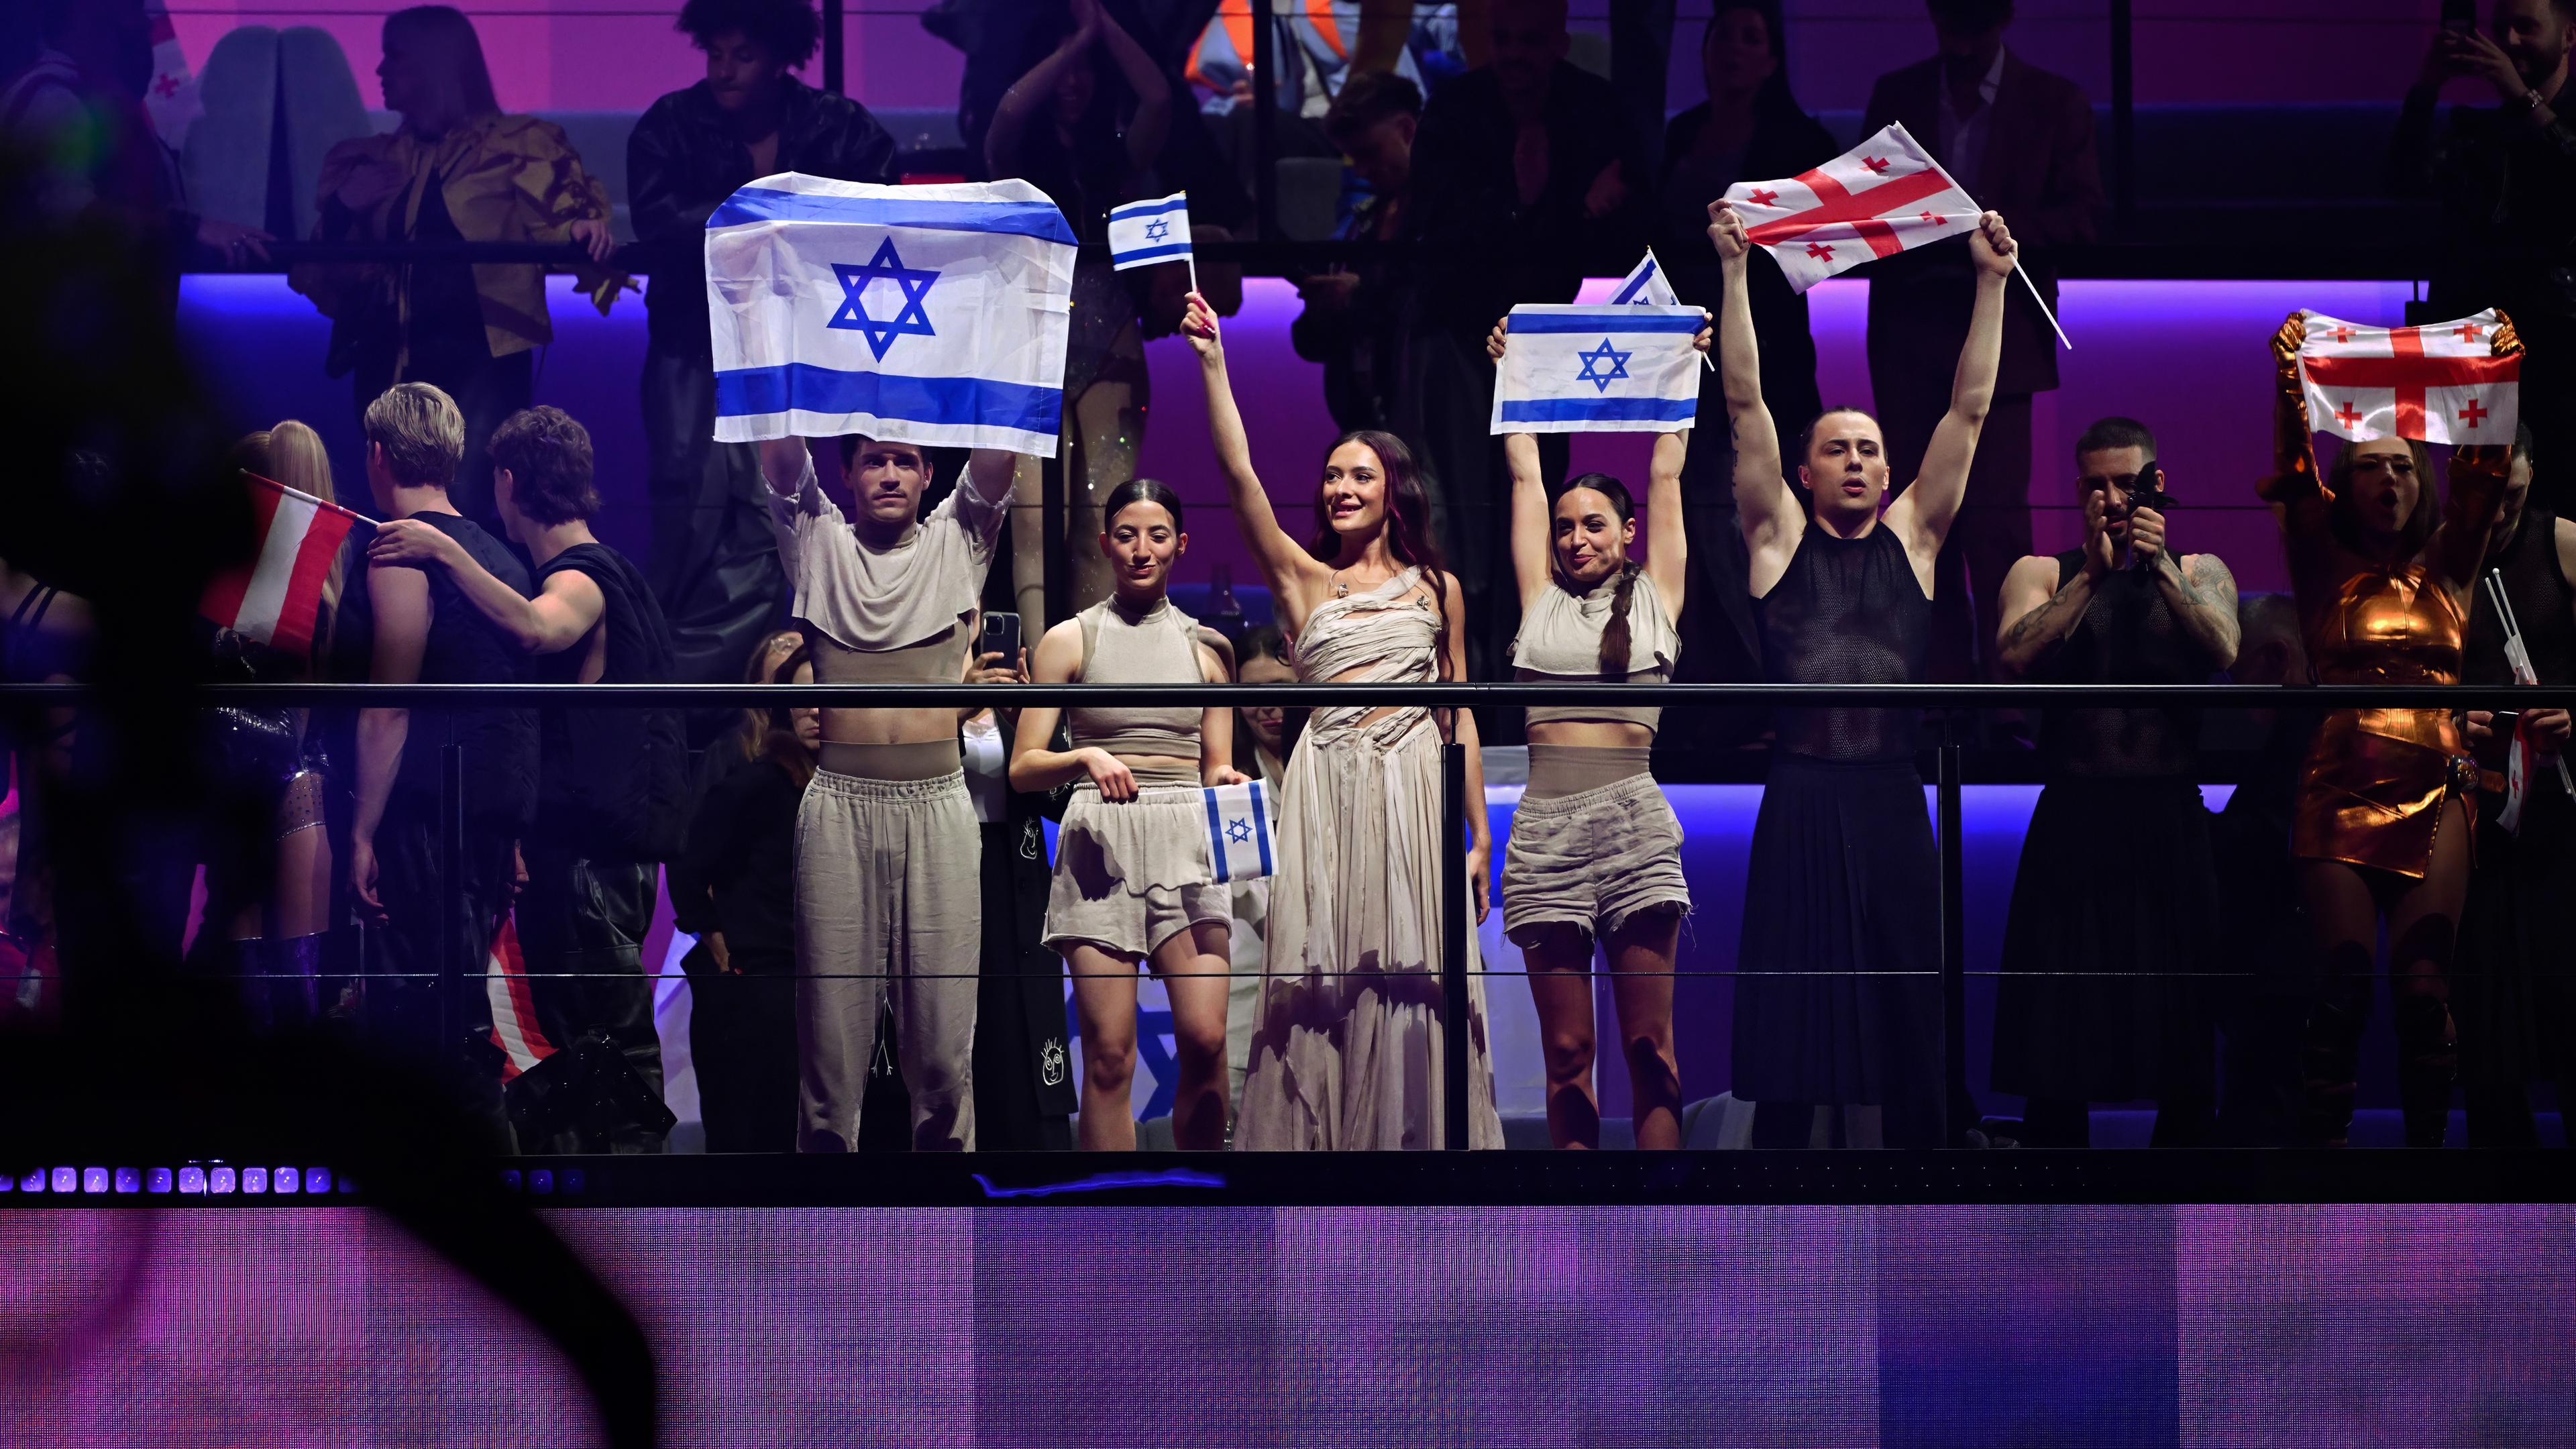 Auf einer Tribühne stehen mehrere junge Menschen in Kostümen und halten israelische Flaggen hoch.